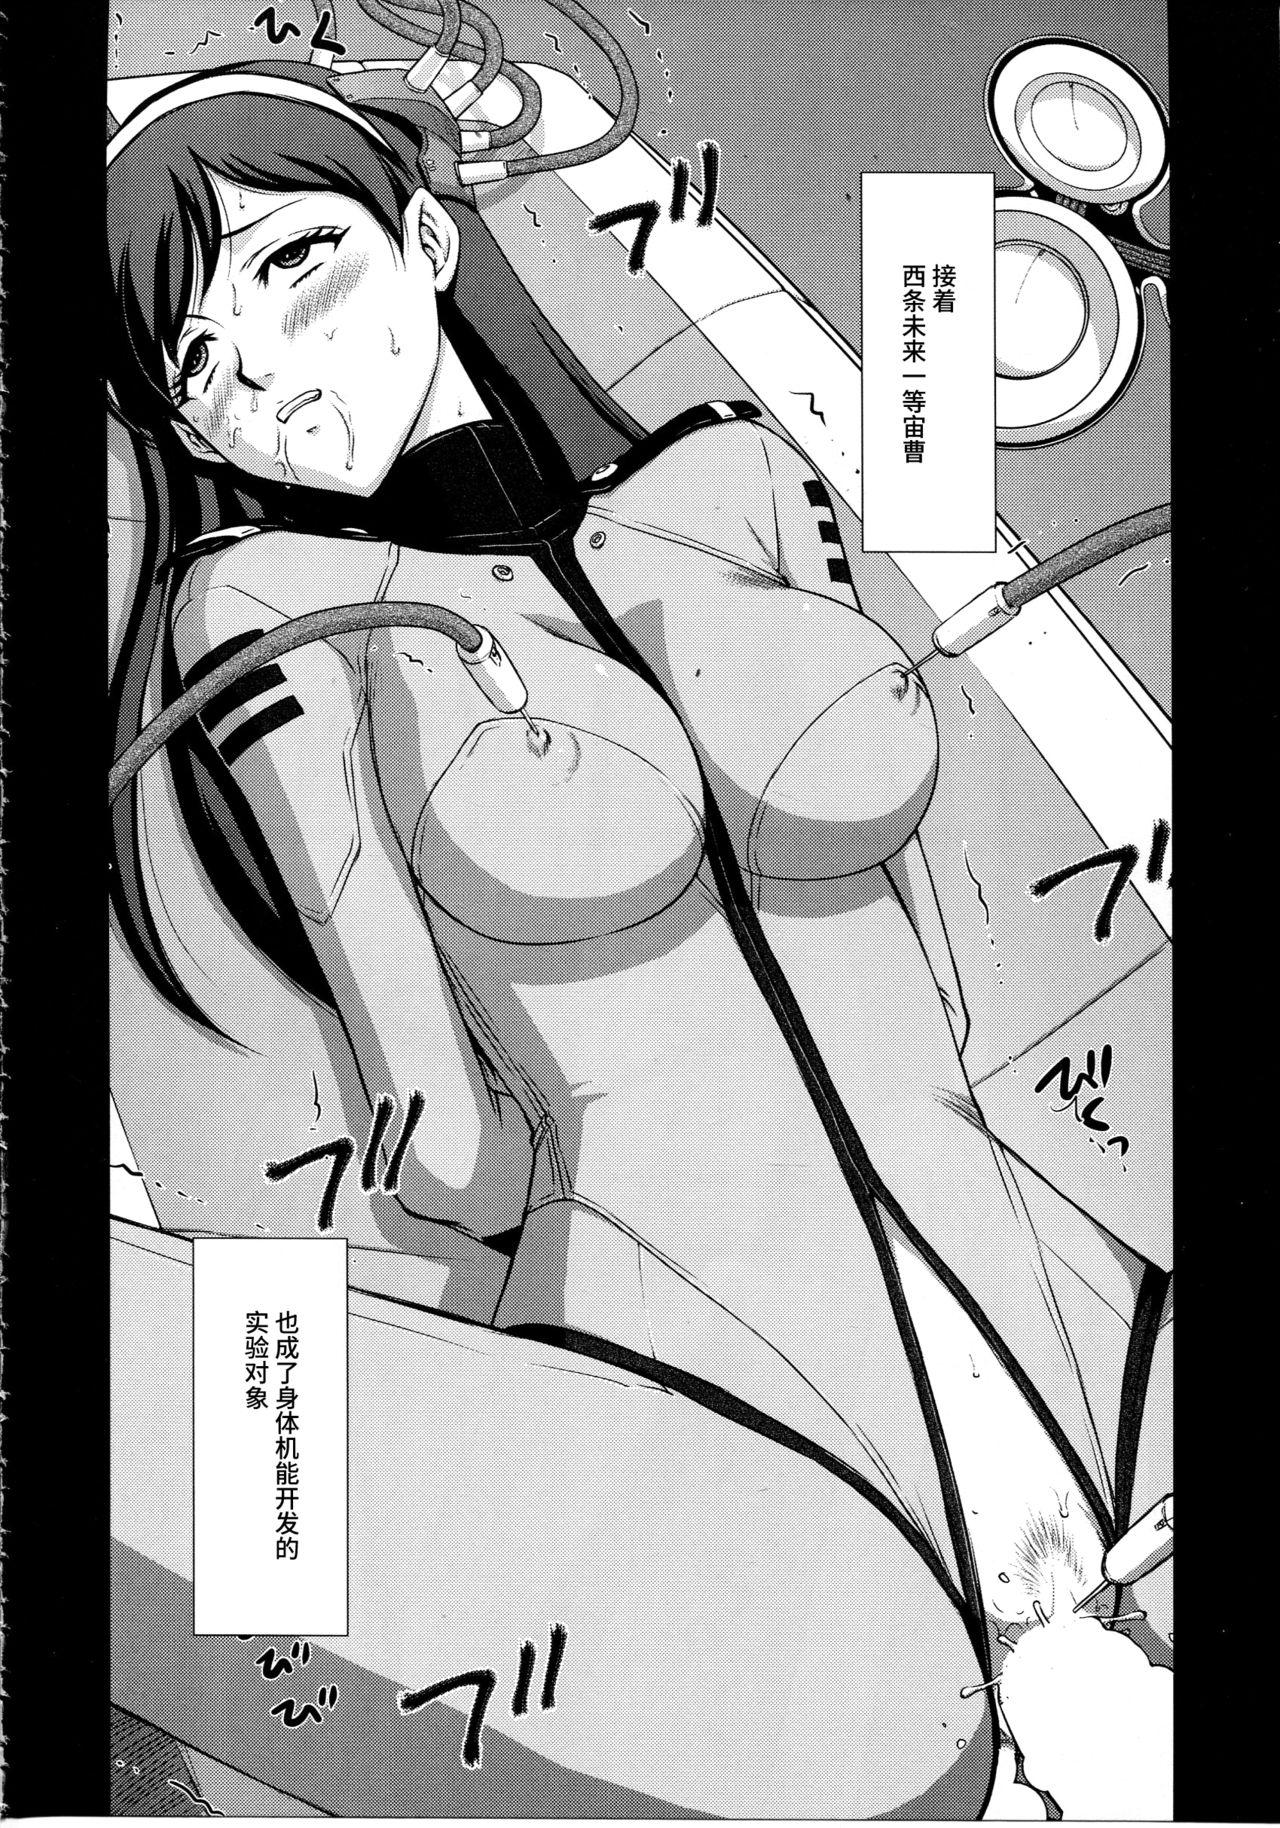 Xxx Yuki no Shizuku - Space battleship yamato 2199 Cumfacial - Page 7